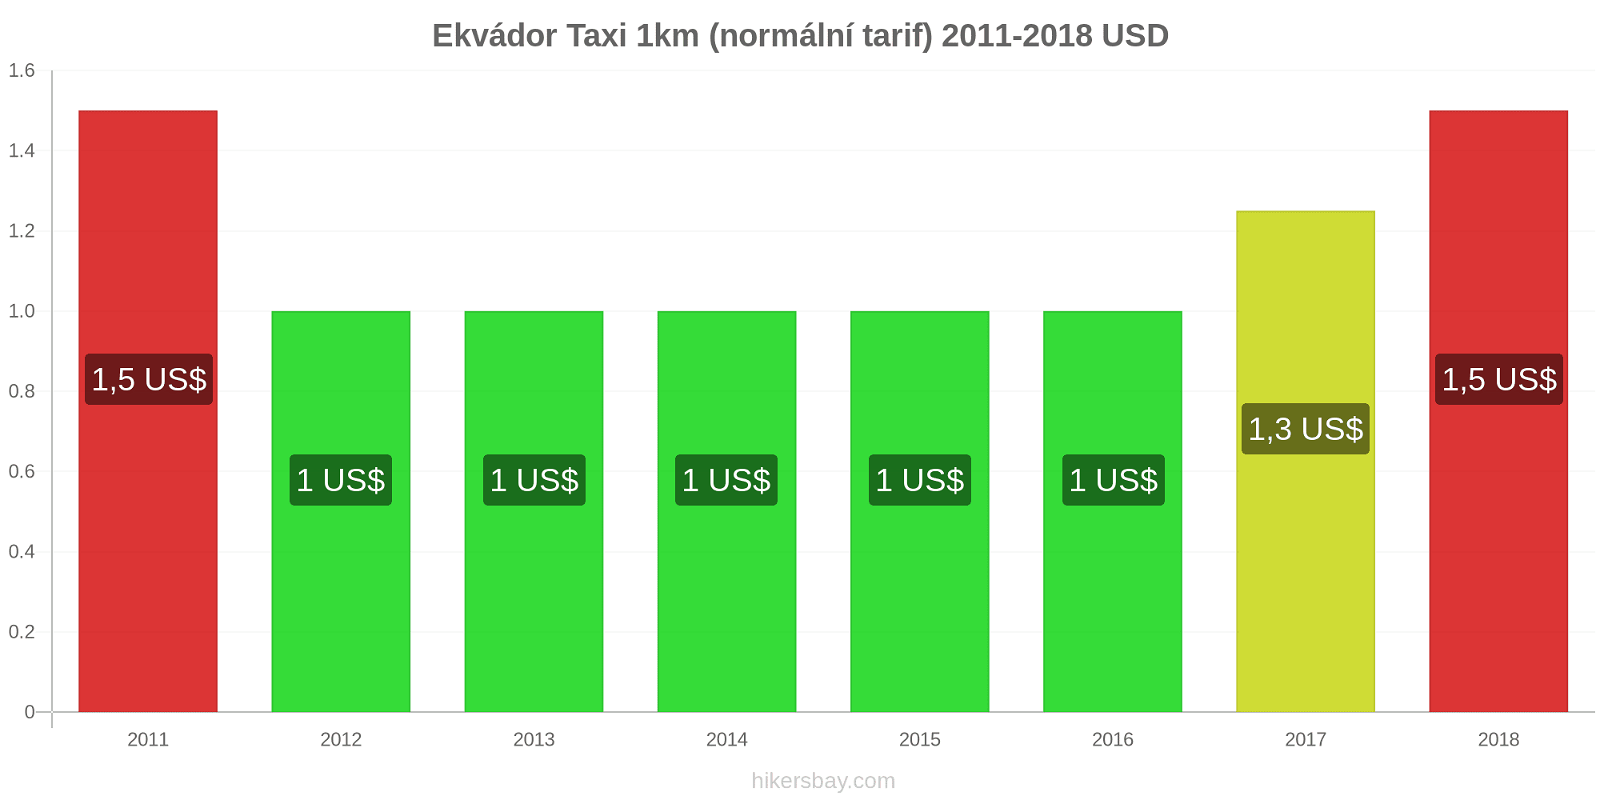 Ekvádor změny cen Taxi 1km (normální tarif) hikersbay.com